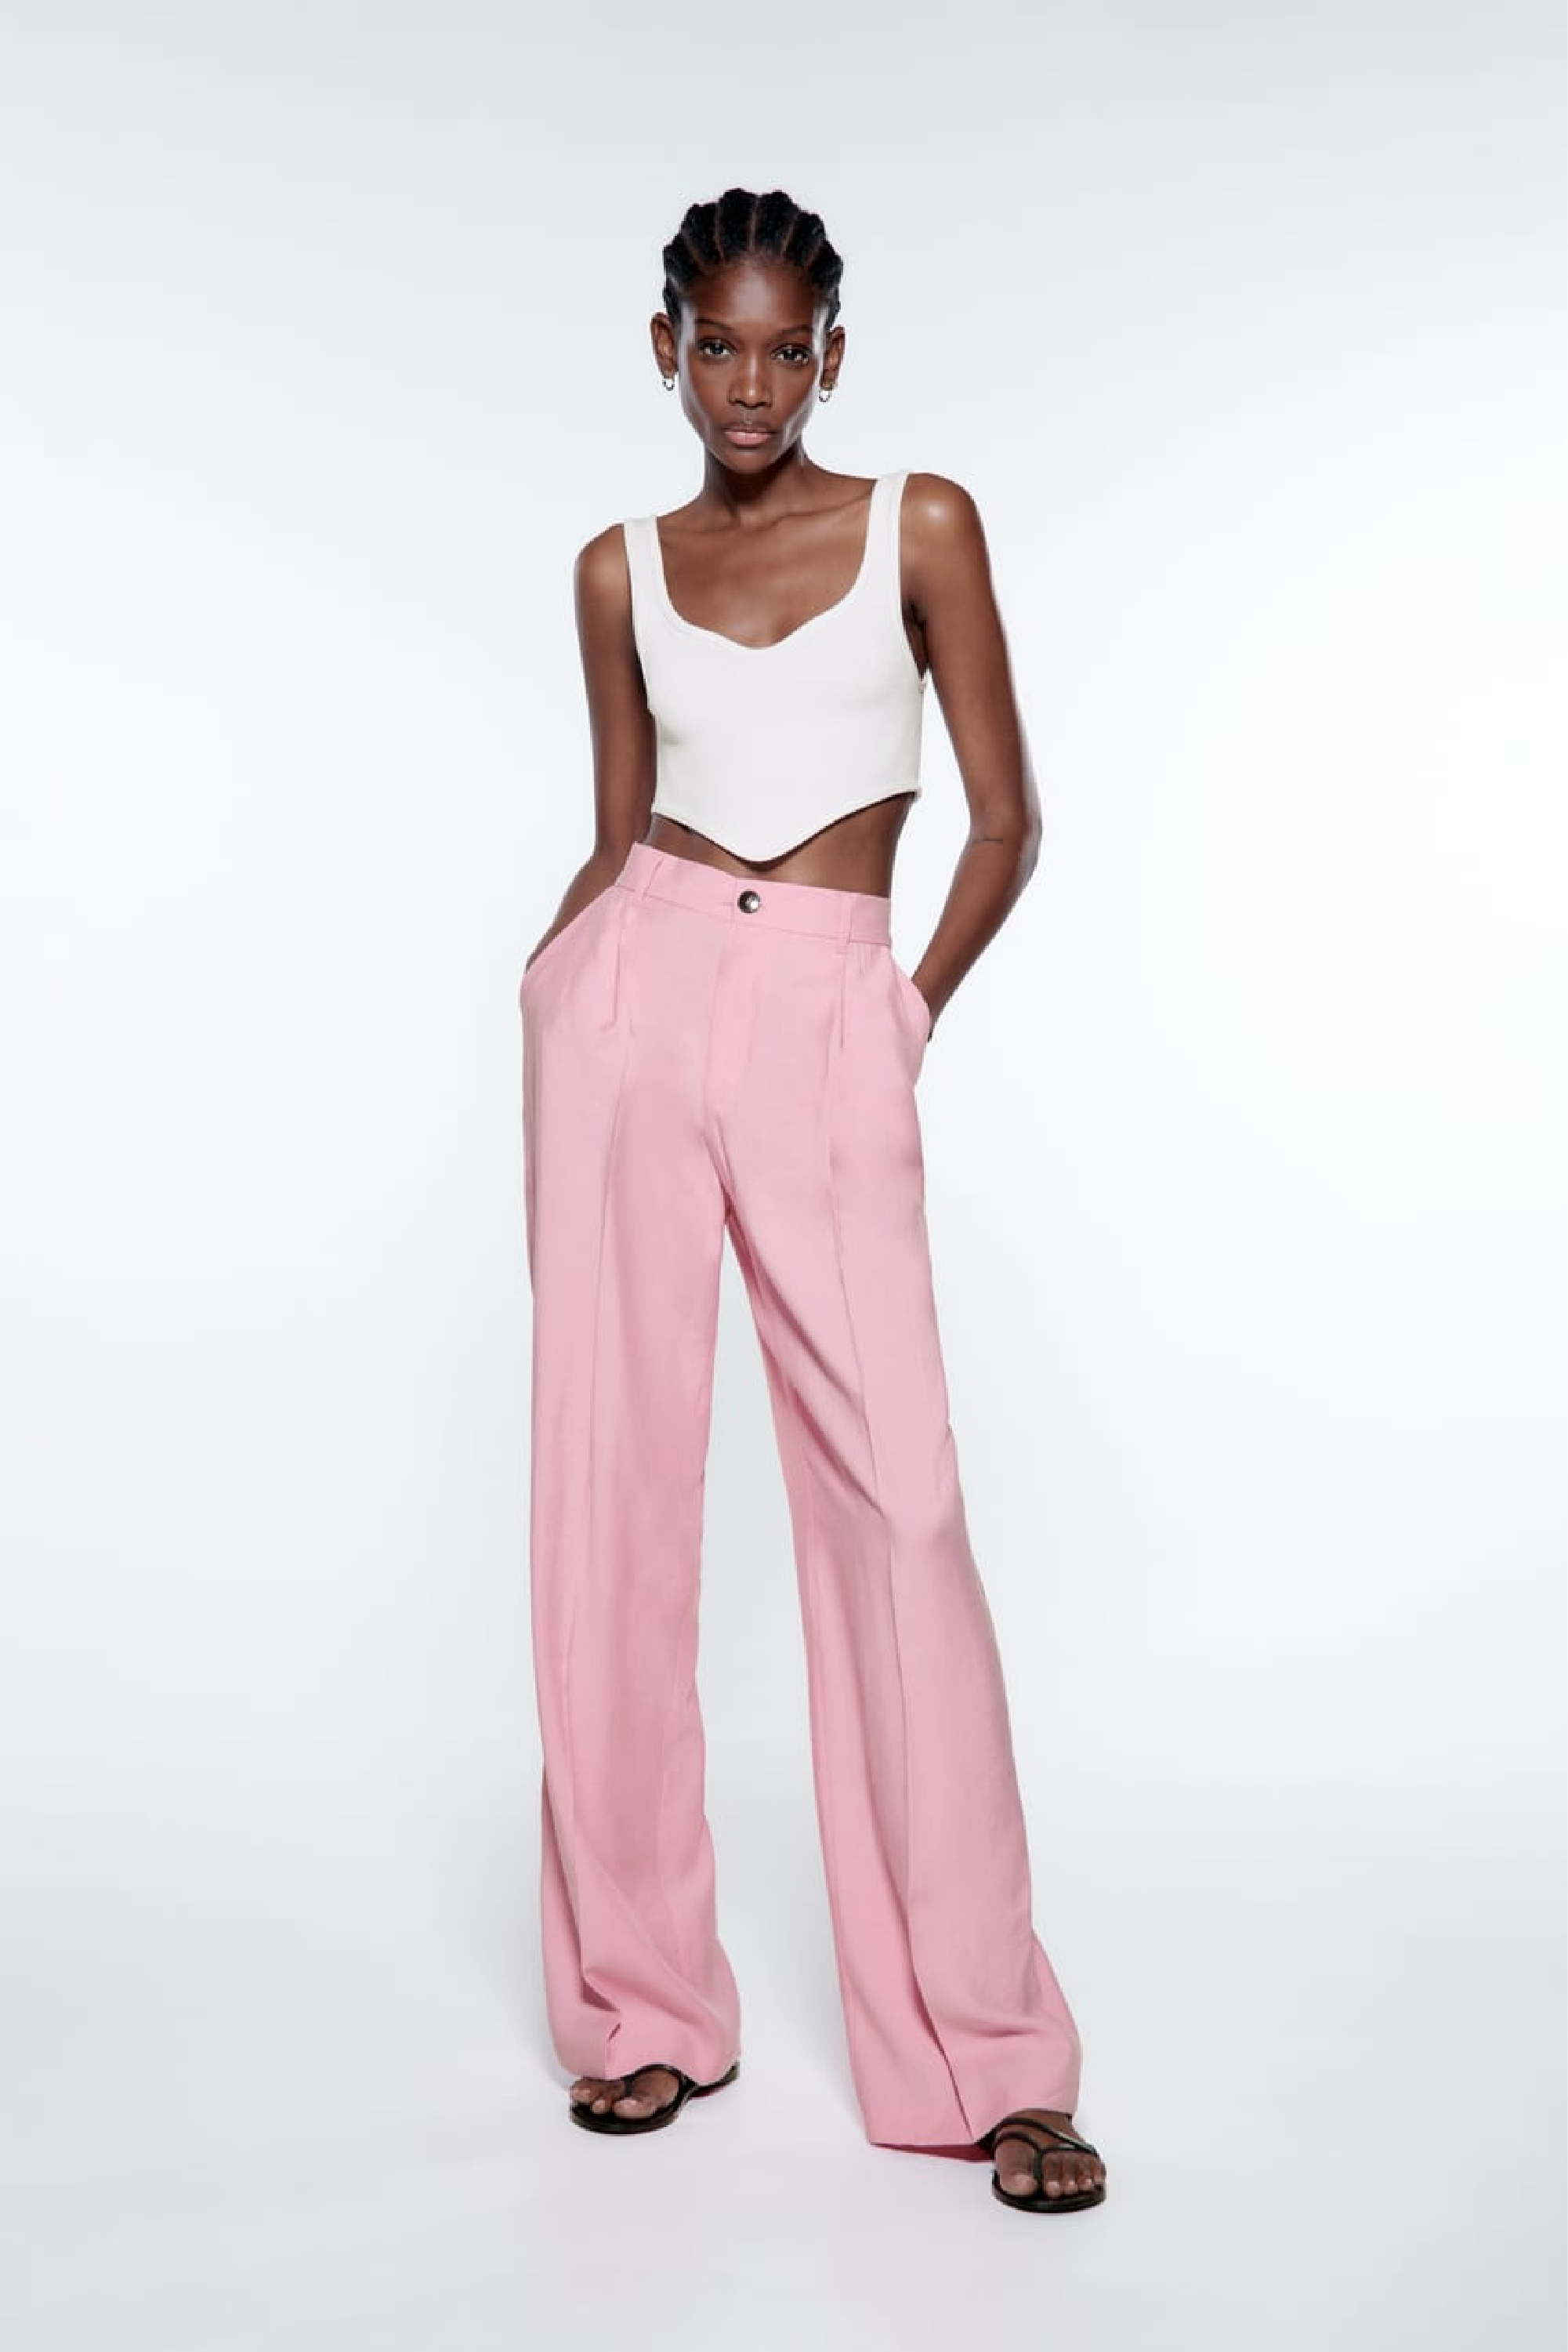 Zara high waist baggy pants rose pink cotton/linen blend size EUR 34 US 2  NWT